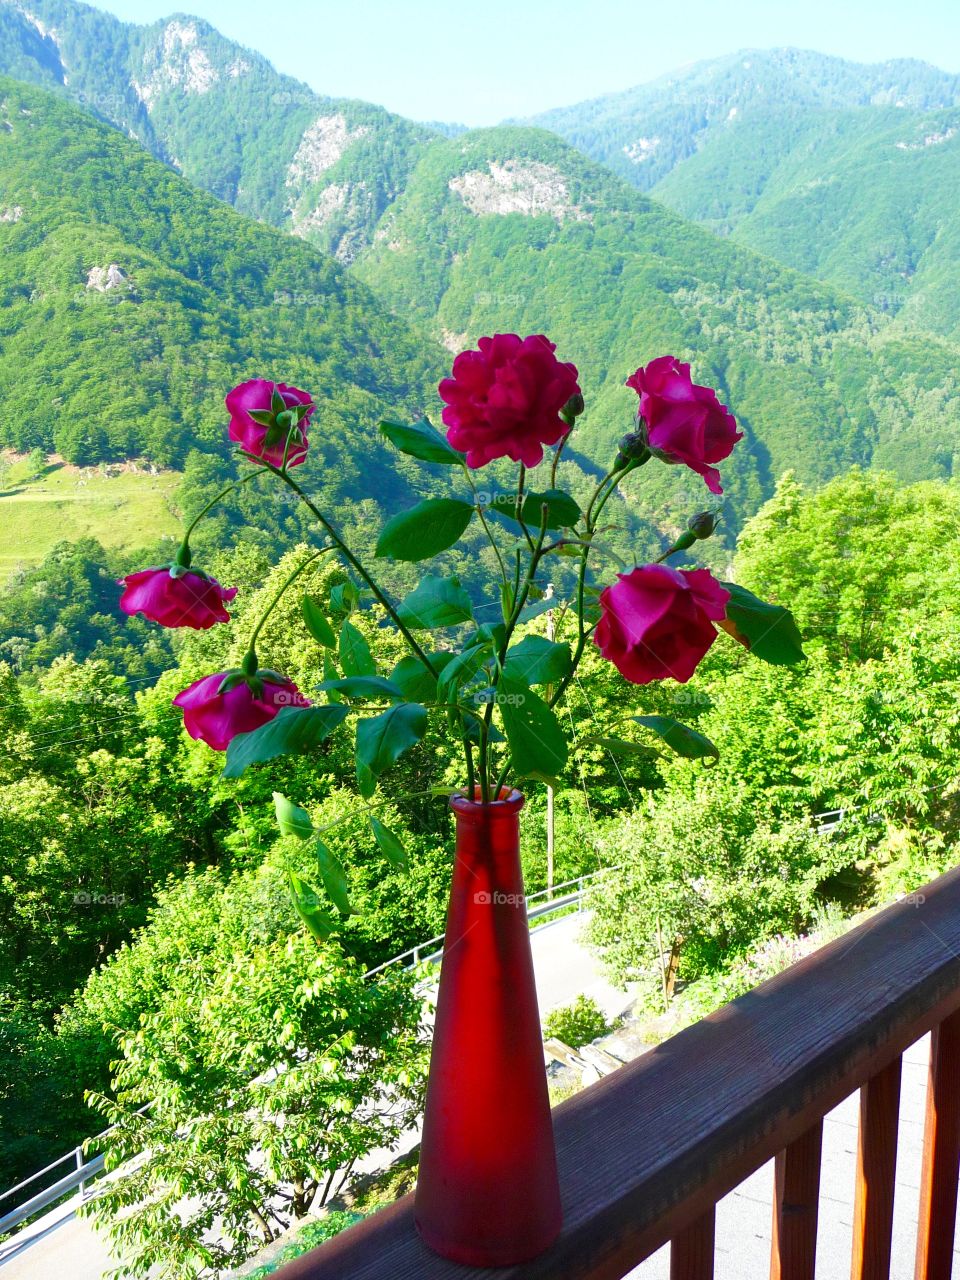 Rose vase on wooden railing